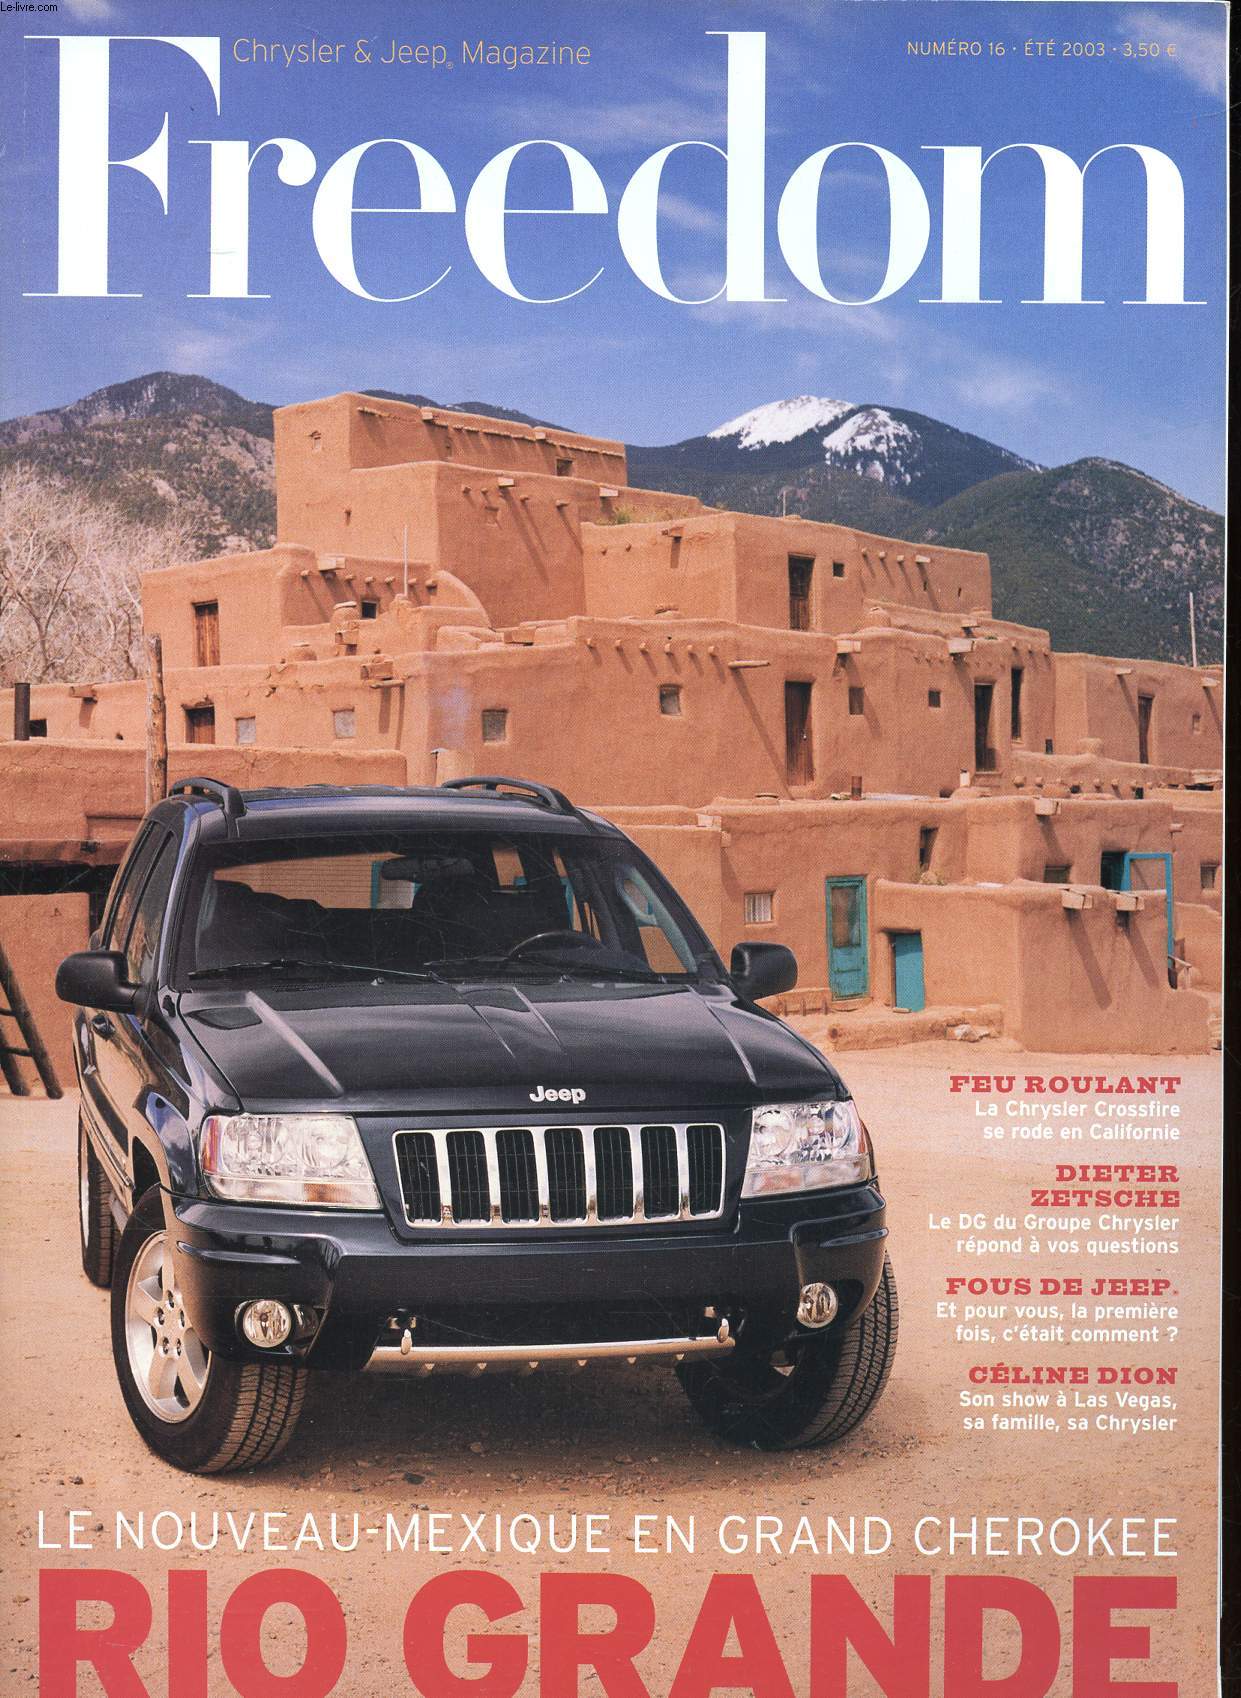 Freedom Chrysler & Jeep Magazine N 16 Et 2003 Le Nouveau Mexique en Grand Cherokee Sommaire: Les nouveauts Chrysler et Jeep: Crossfire 300 C, 300 M Eagle Serie, Grand Voyager Cyrillus...